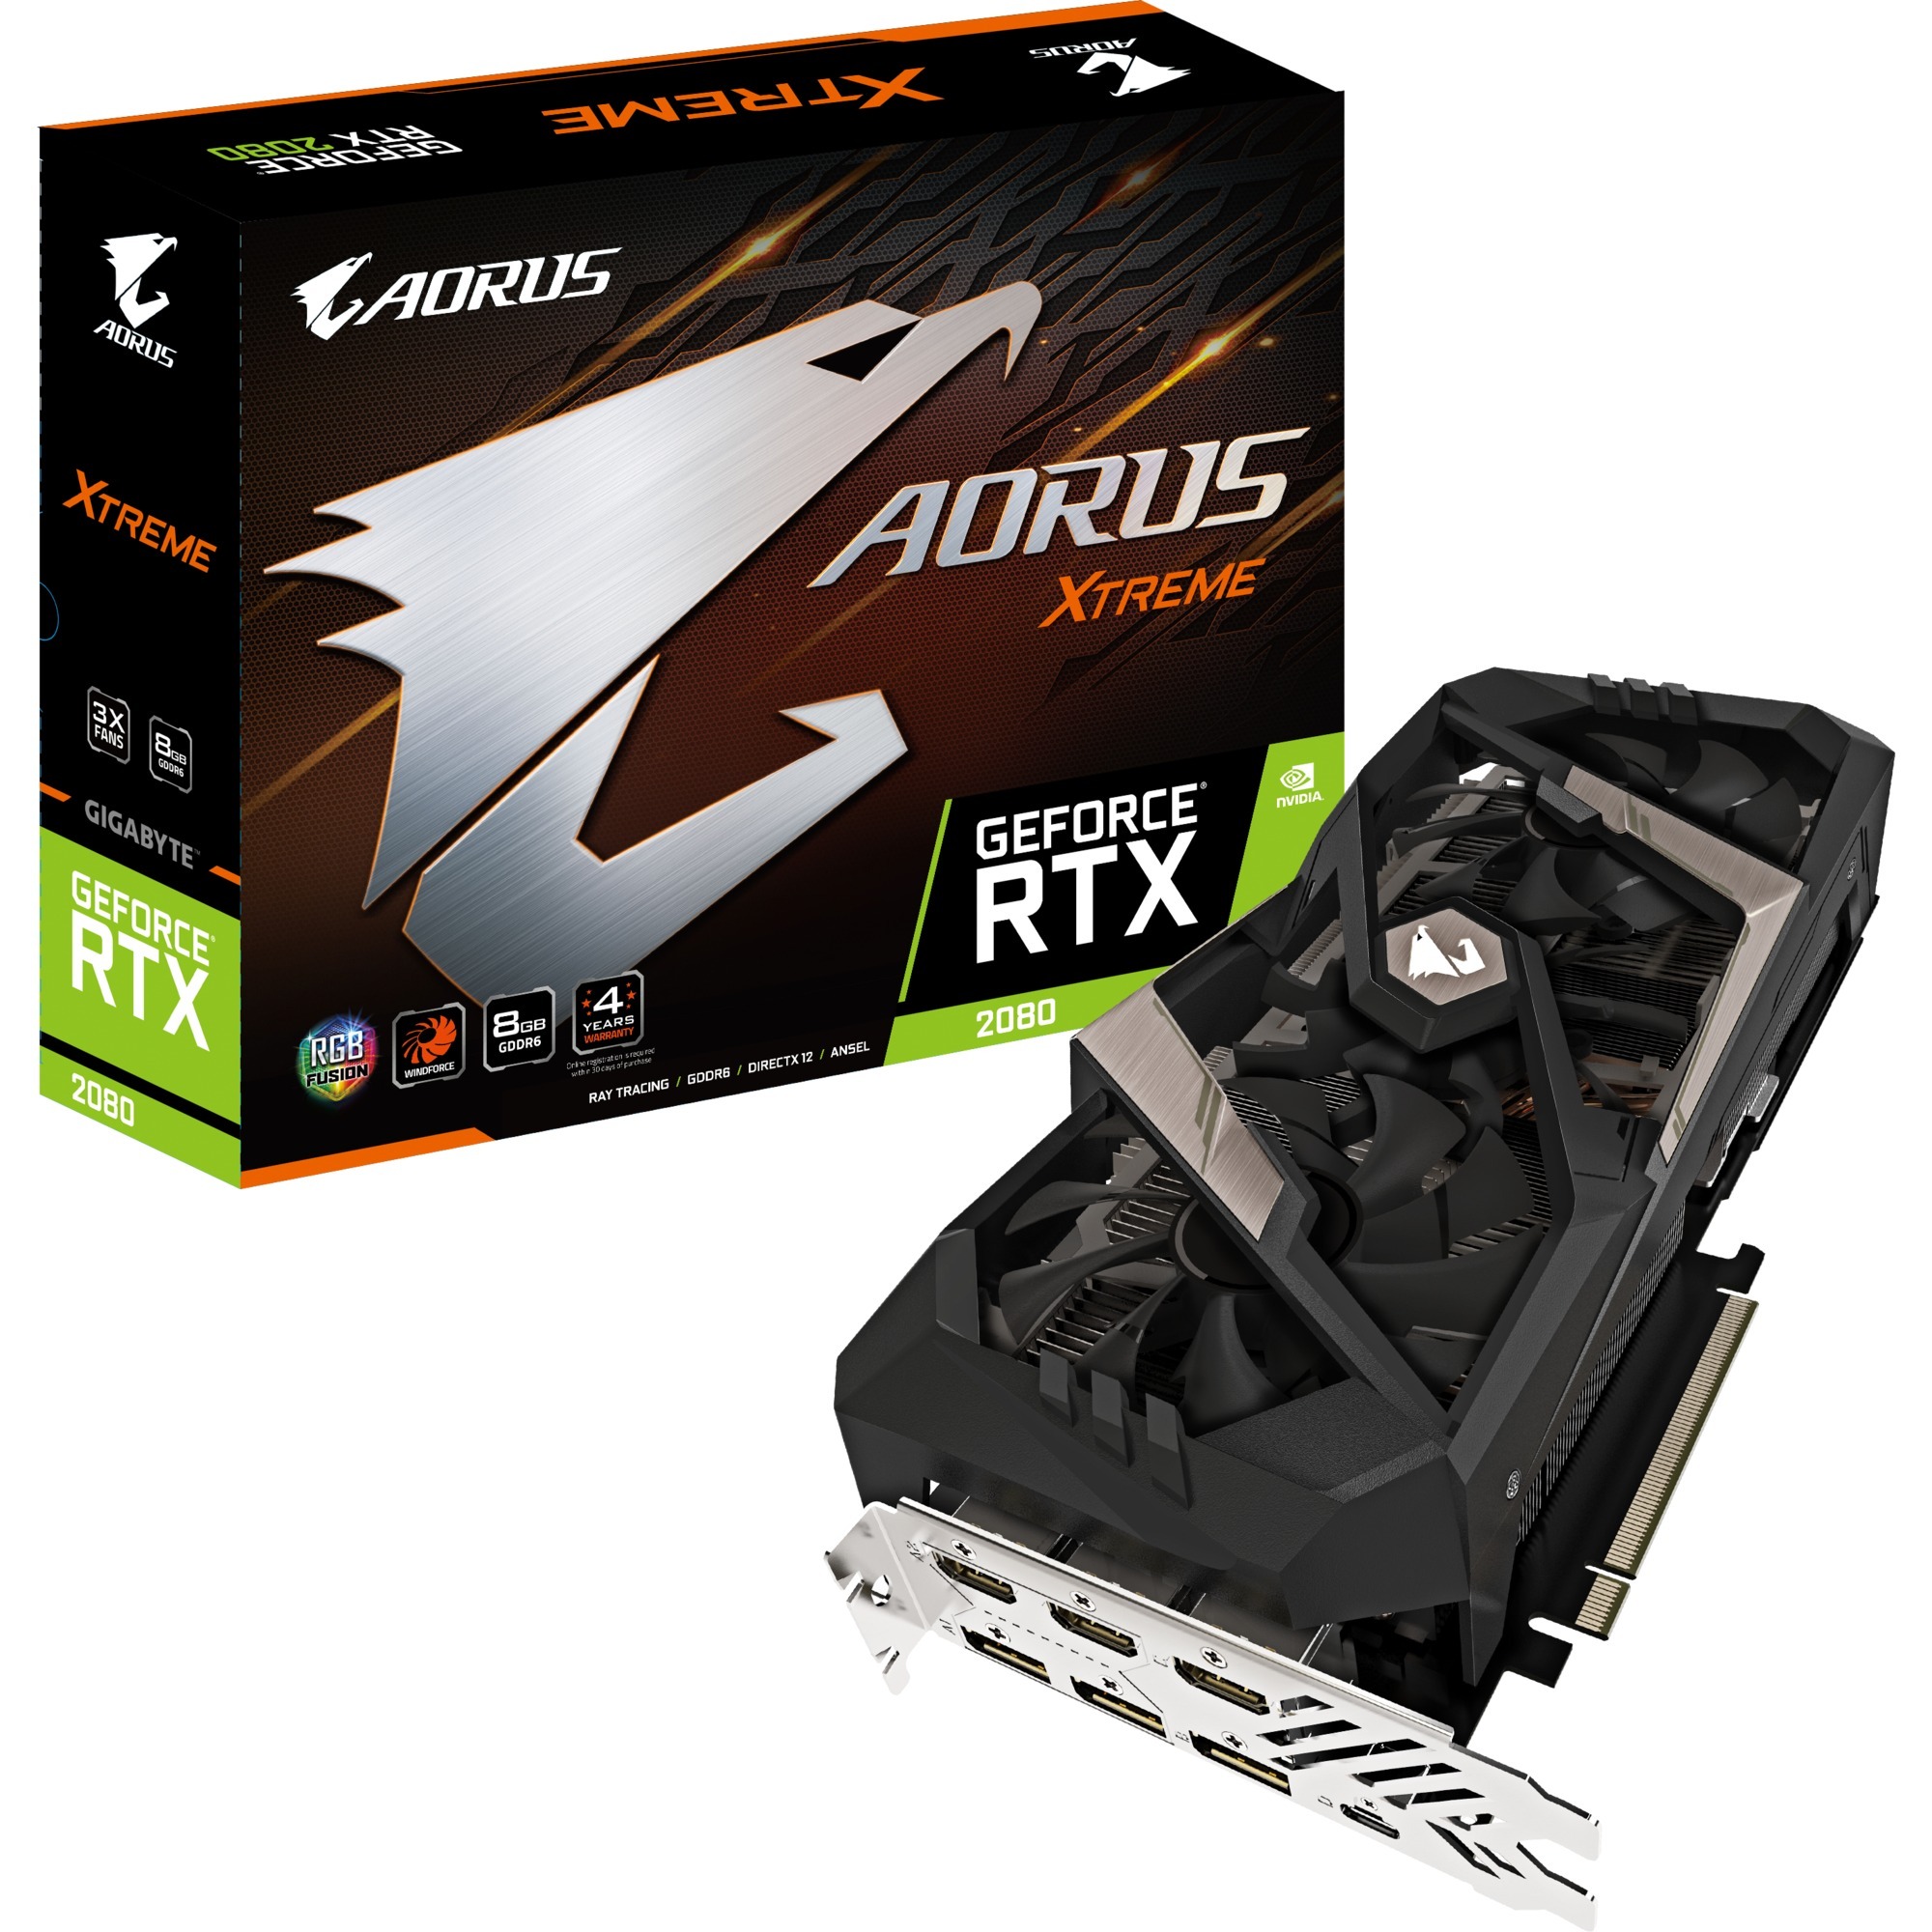 AORUS GeForce RTX 2080 XTREME 8 GB GDDR6, Karta graficzna